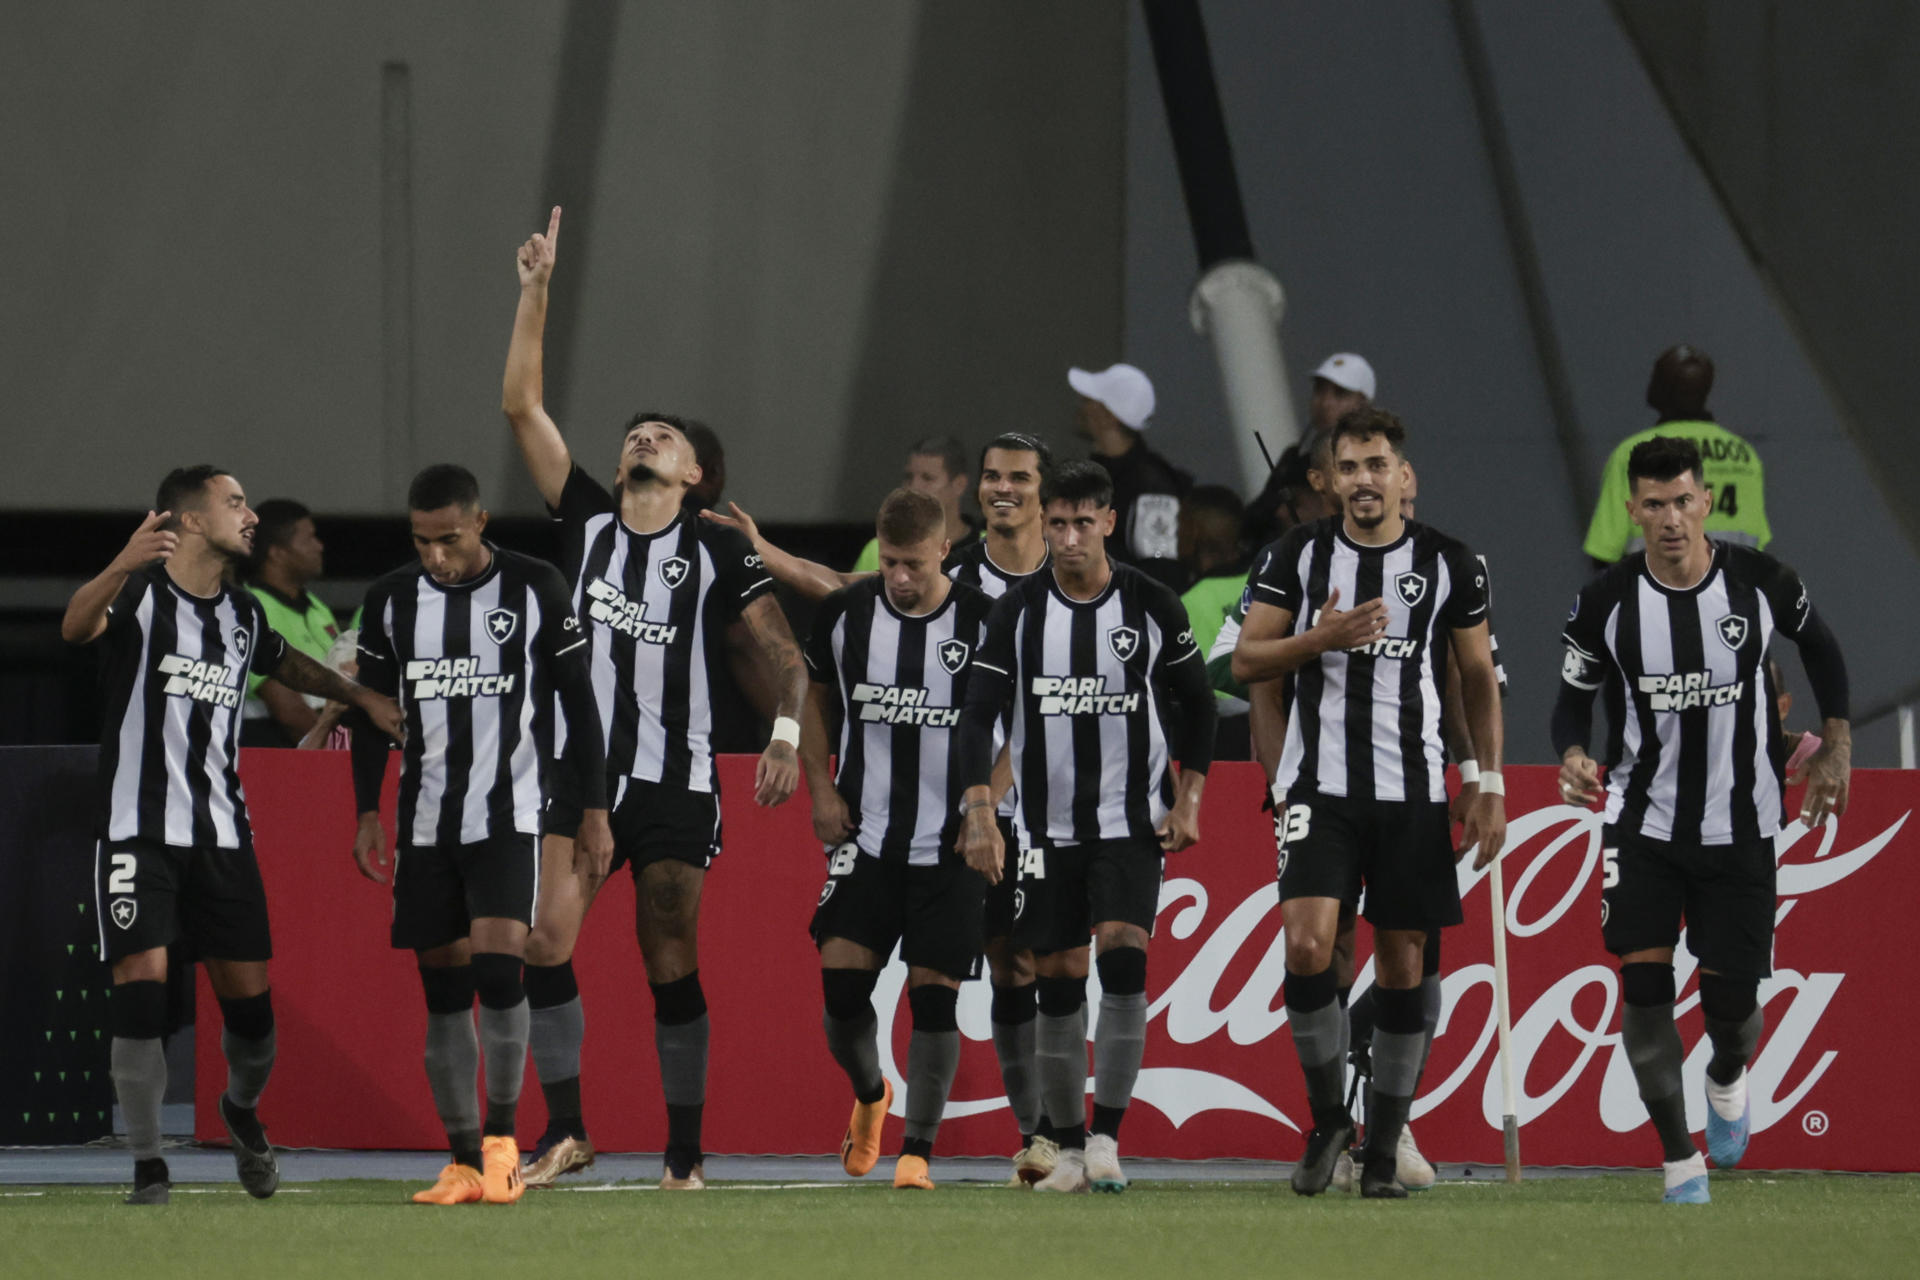 Jugadores del Botafogo de Brasil fueron registrados este jueves, 20 de abril, al celebrar un gol que le anotaron al César Vallejo de Perú, durante un partido del grupo A de la Copa Sudamericana, en el estadio Nilton Santos, en Río de Janeiro (Brasil). EFE/Antonio Lacerda